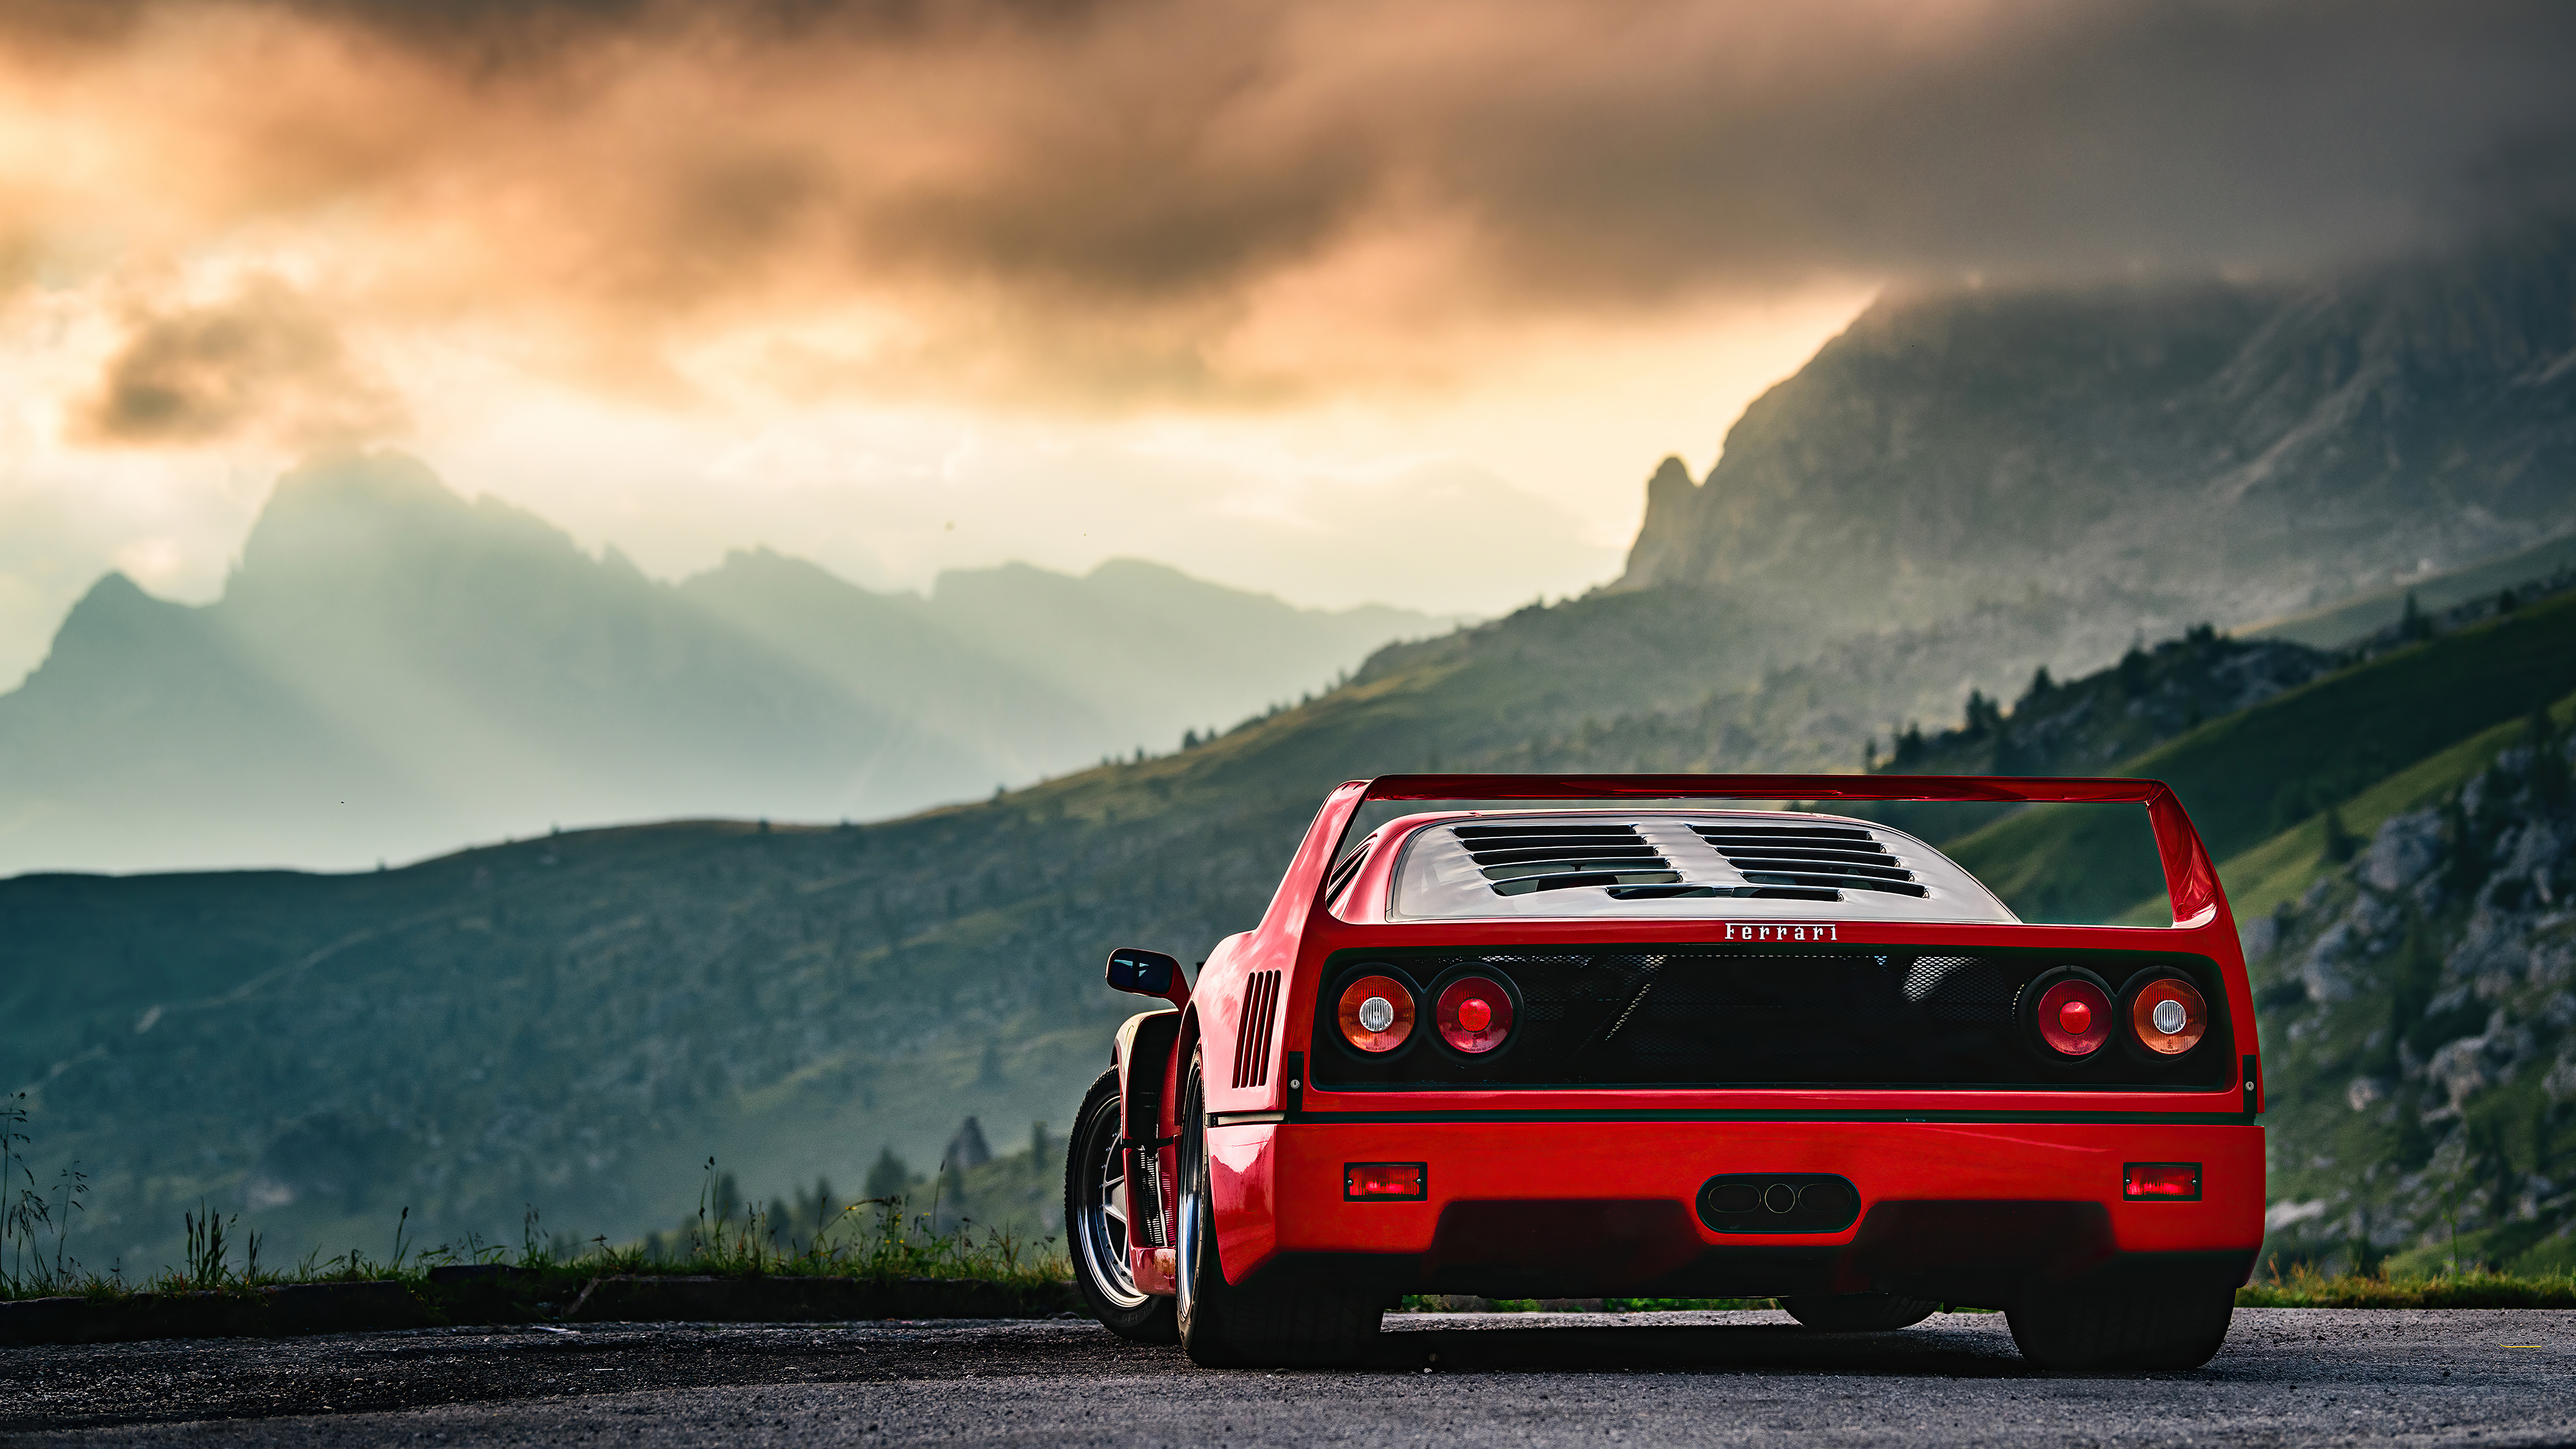 Ferrari f40 rear view